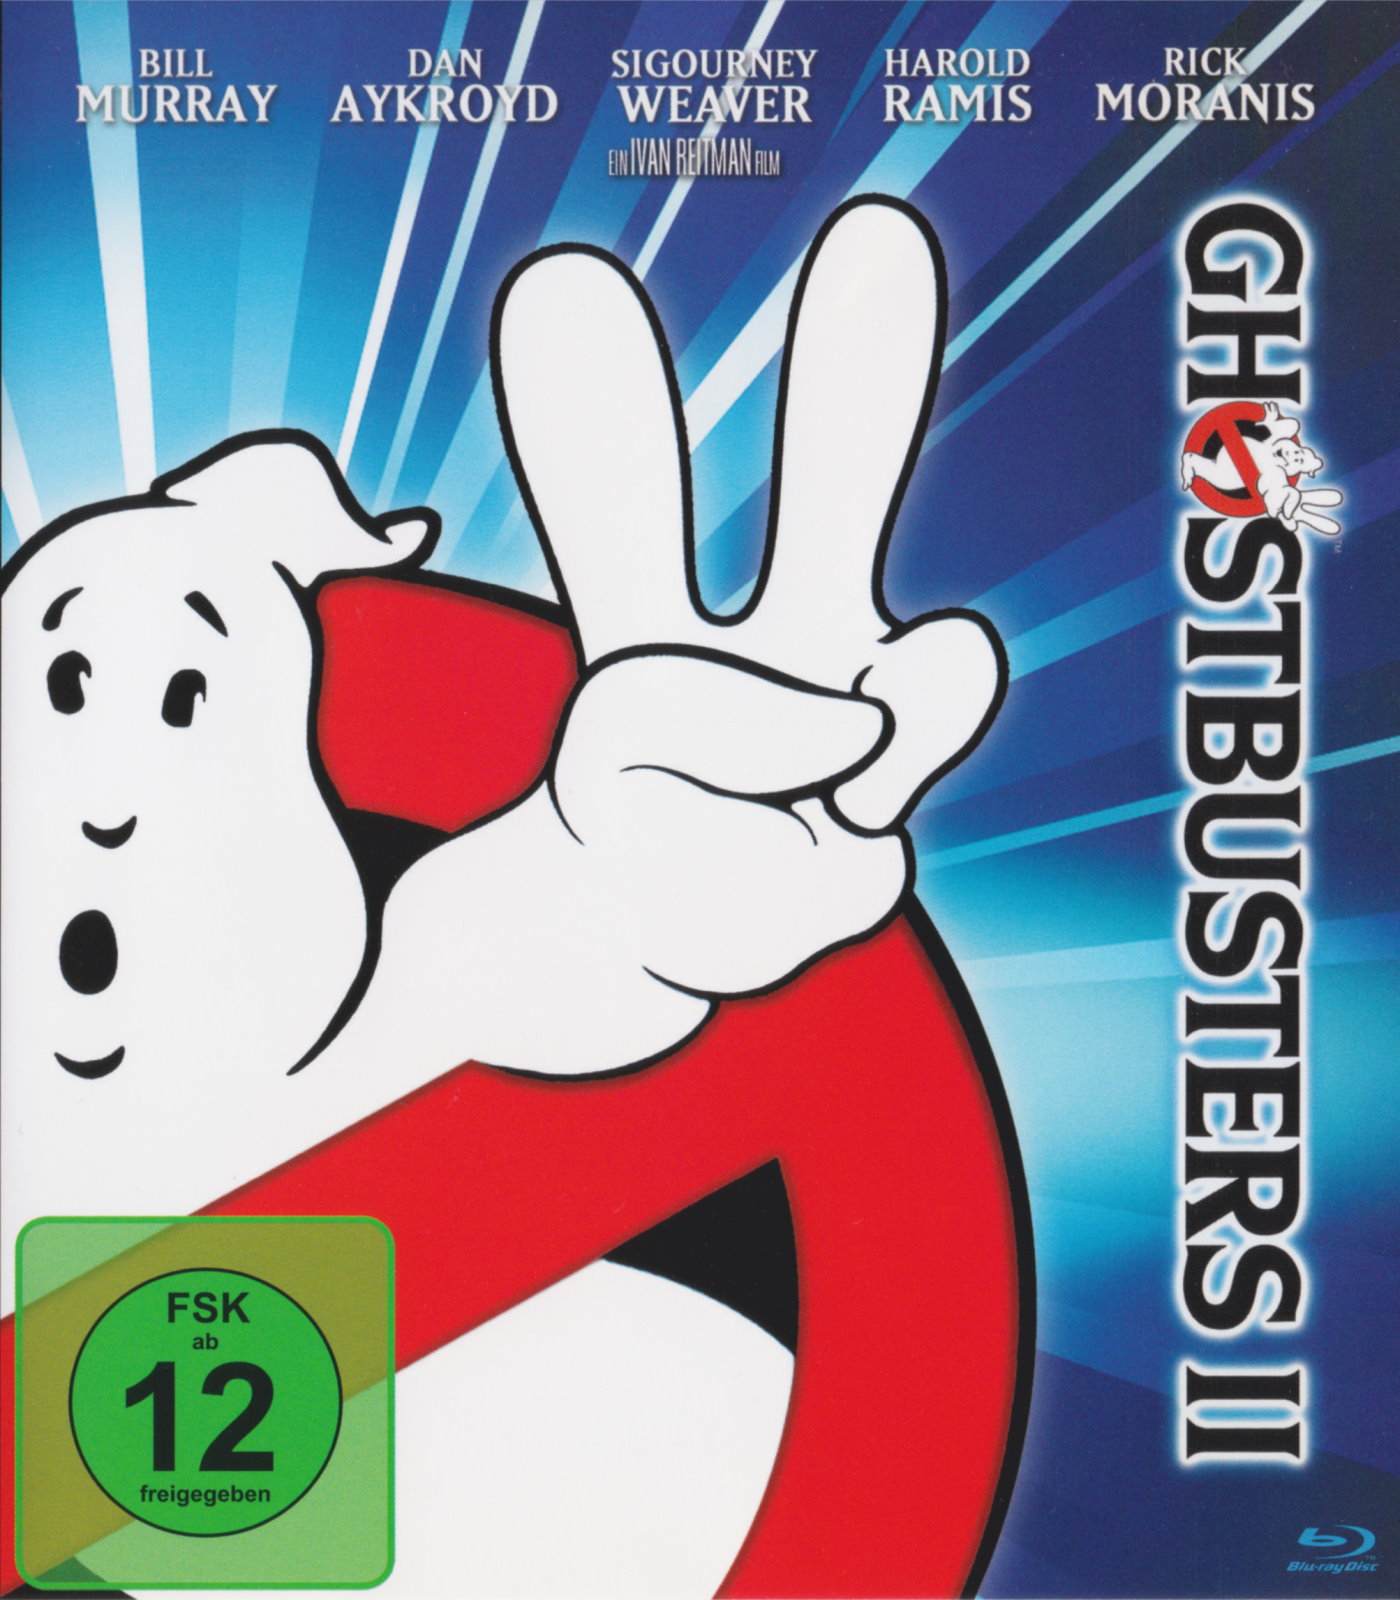 Cover - Ghostbusters II.jpg